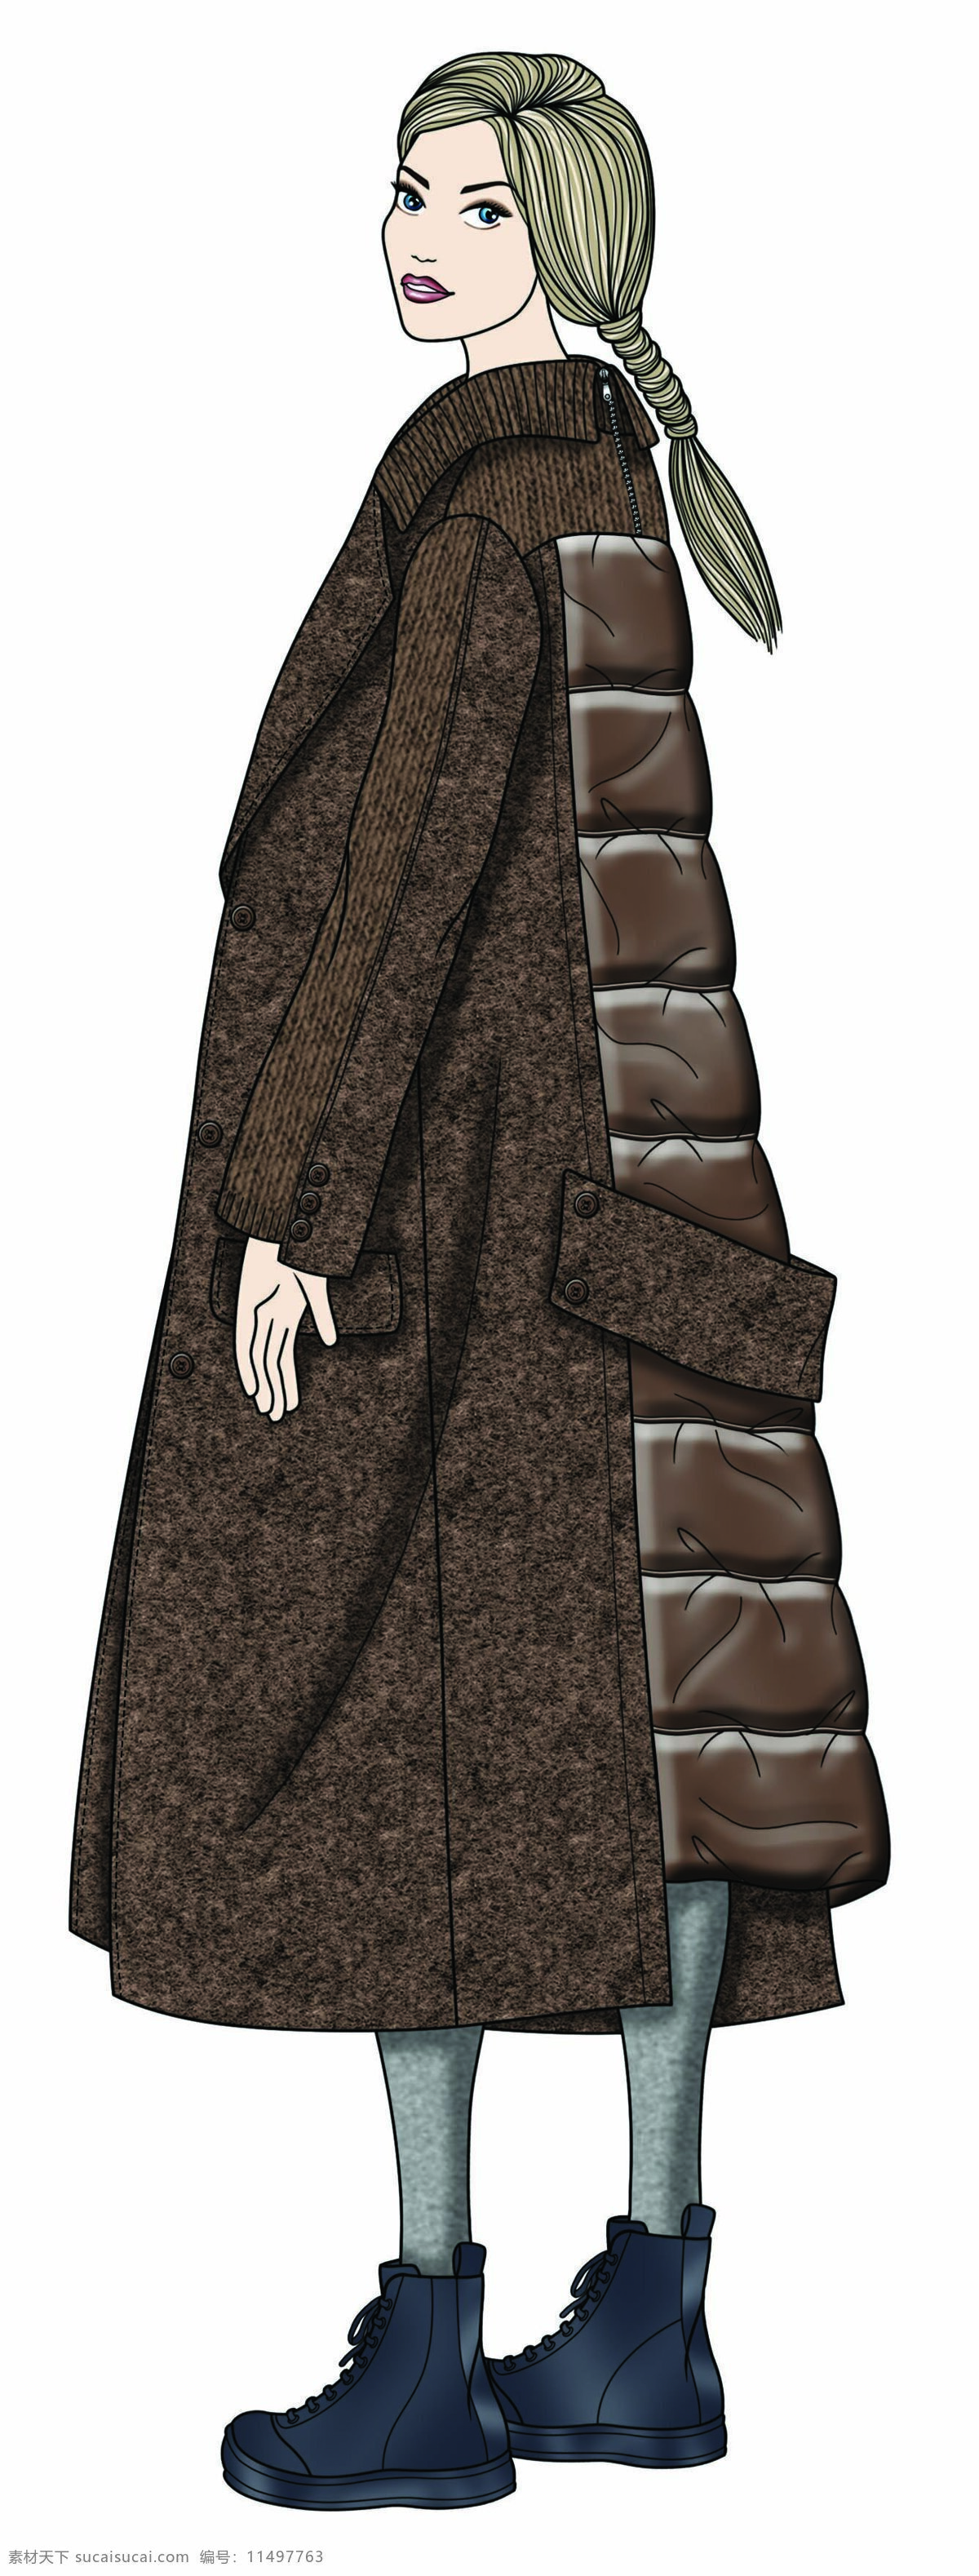 温婉 美丽 褐色 大 外套 女装 服装 效果图 长发模特 服装效果图 褐色外套 裤子 上衣